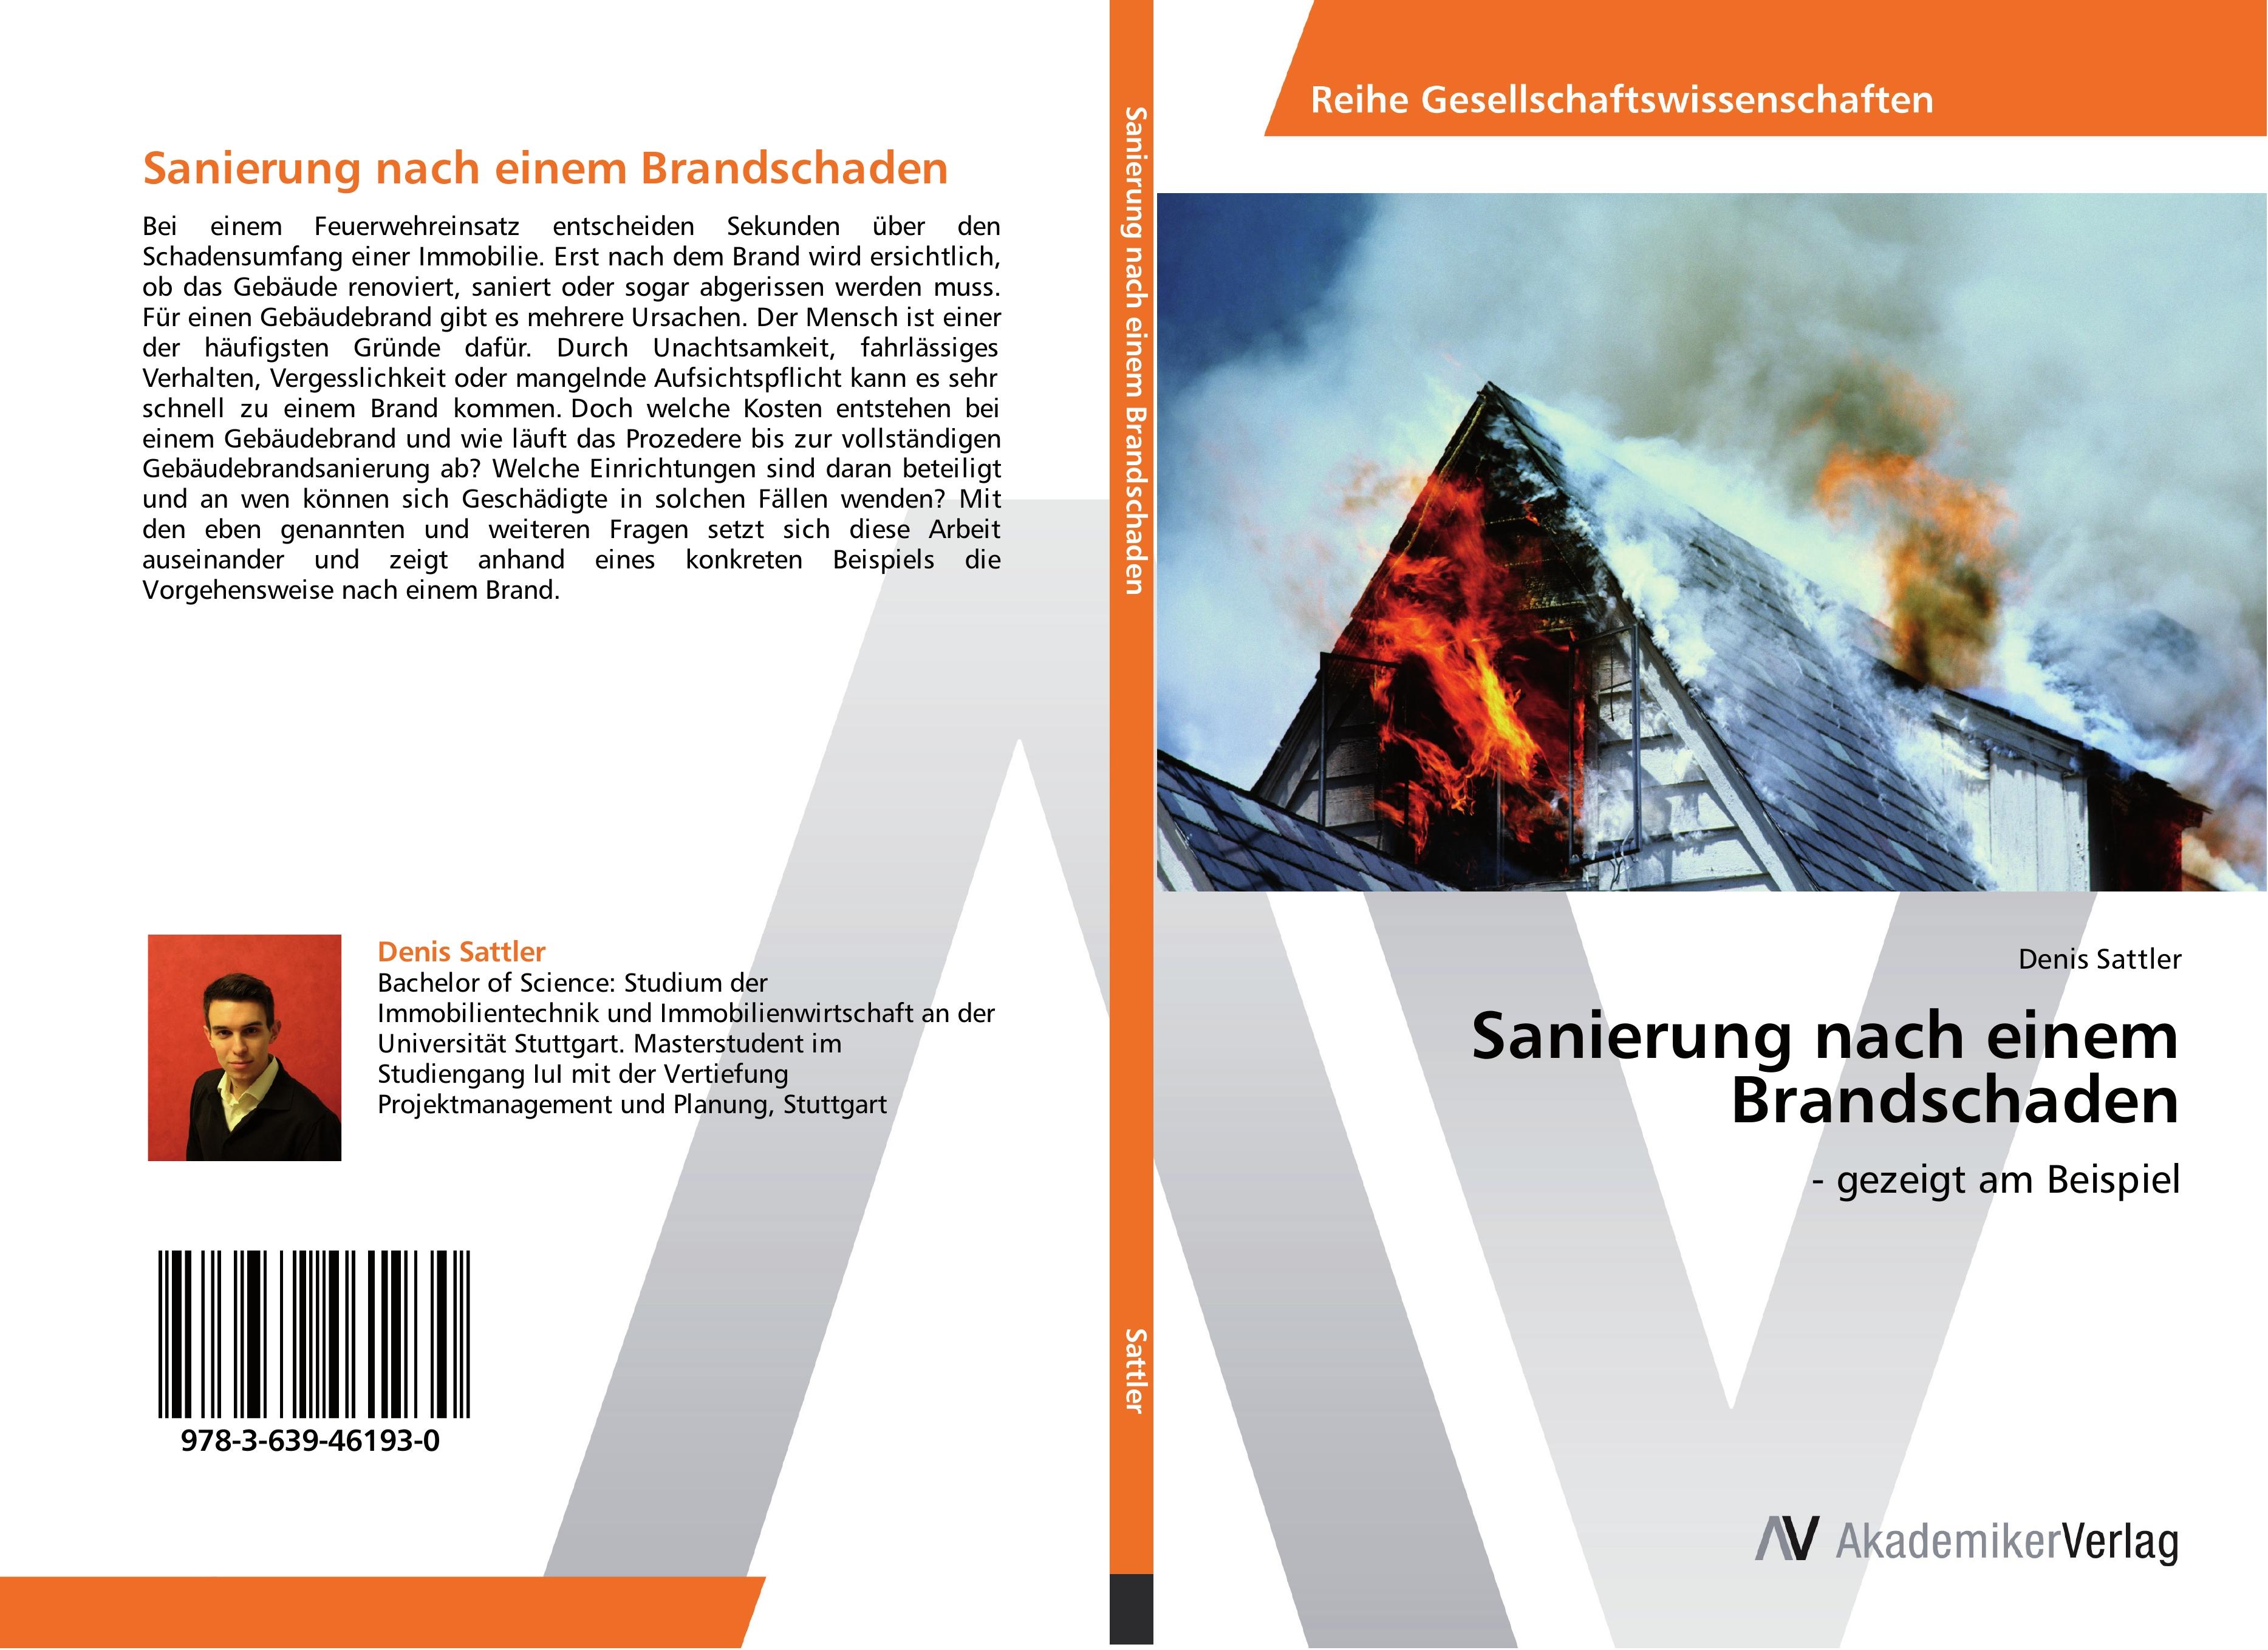 Sanierung nach einem Brandschaden / - gezeigt am Beispiel / Denis Sattler / Taschenbuch / Paperback / 104 S. / Deutsch / 2013 / AV Akademikerverlag / EAN 9783639461930 - Sattler, Denis